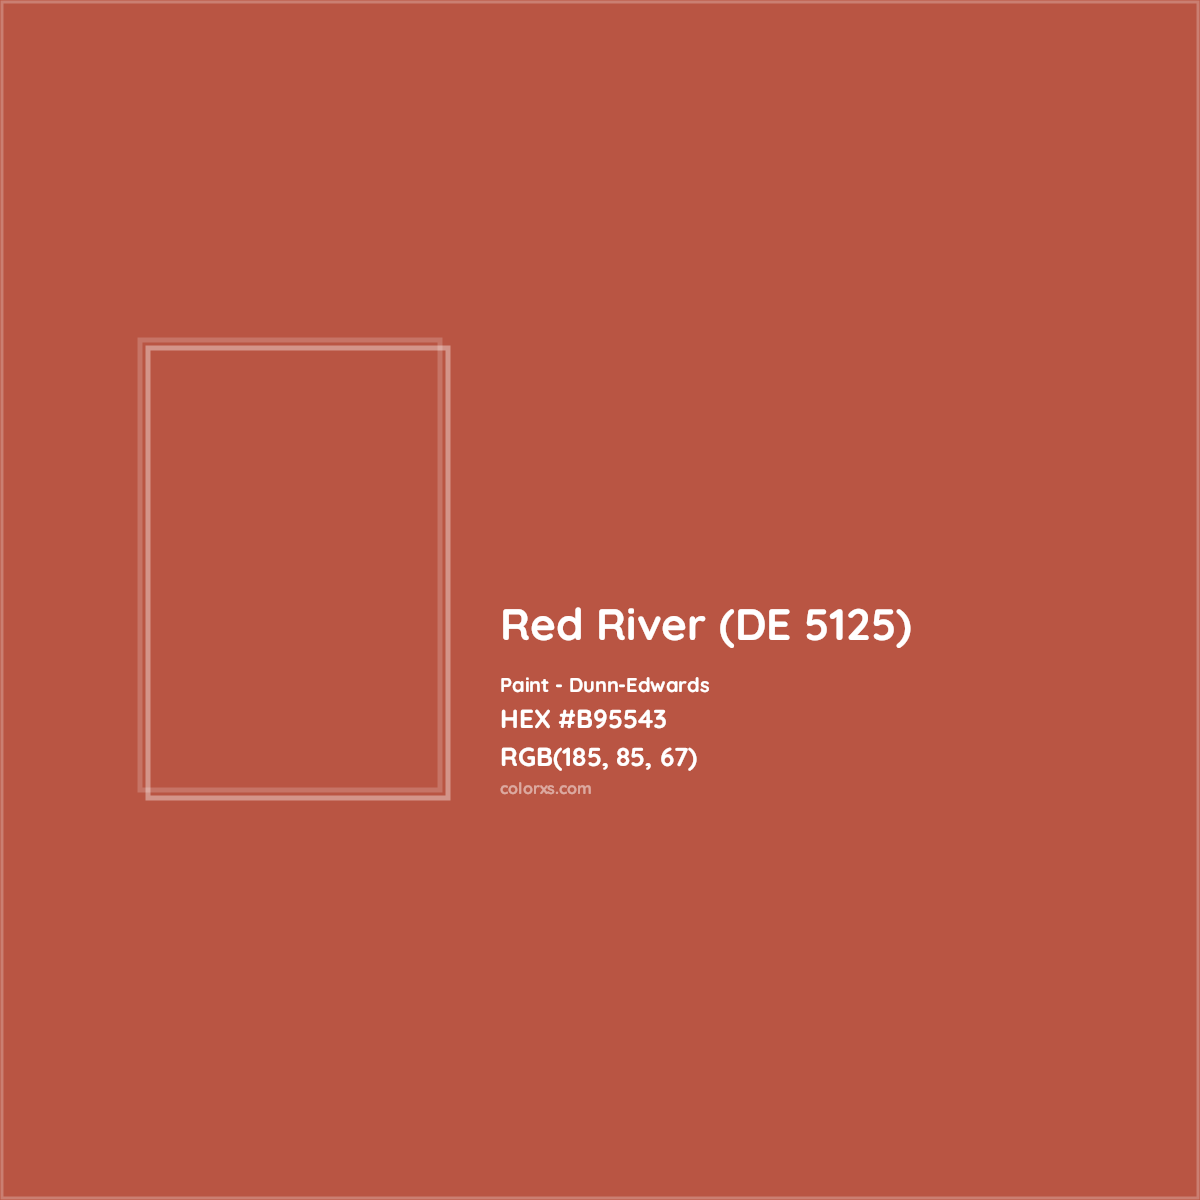 HEX #B95543 Red River (DE 5125) Paint Dunn-Edwards - Color Code